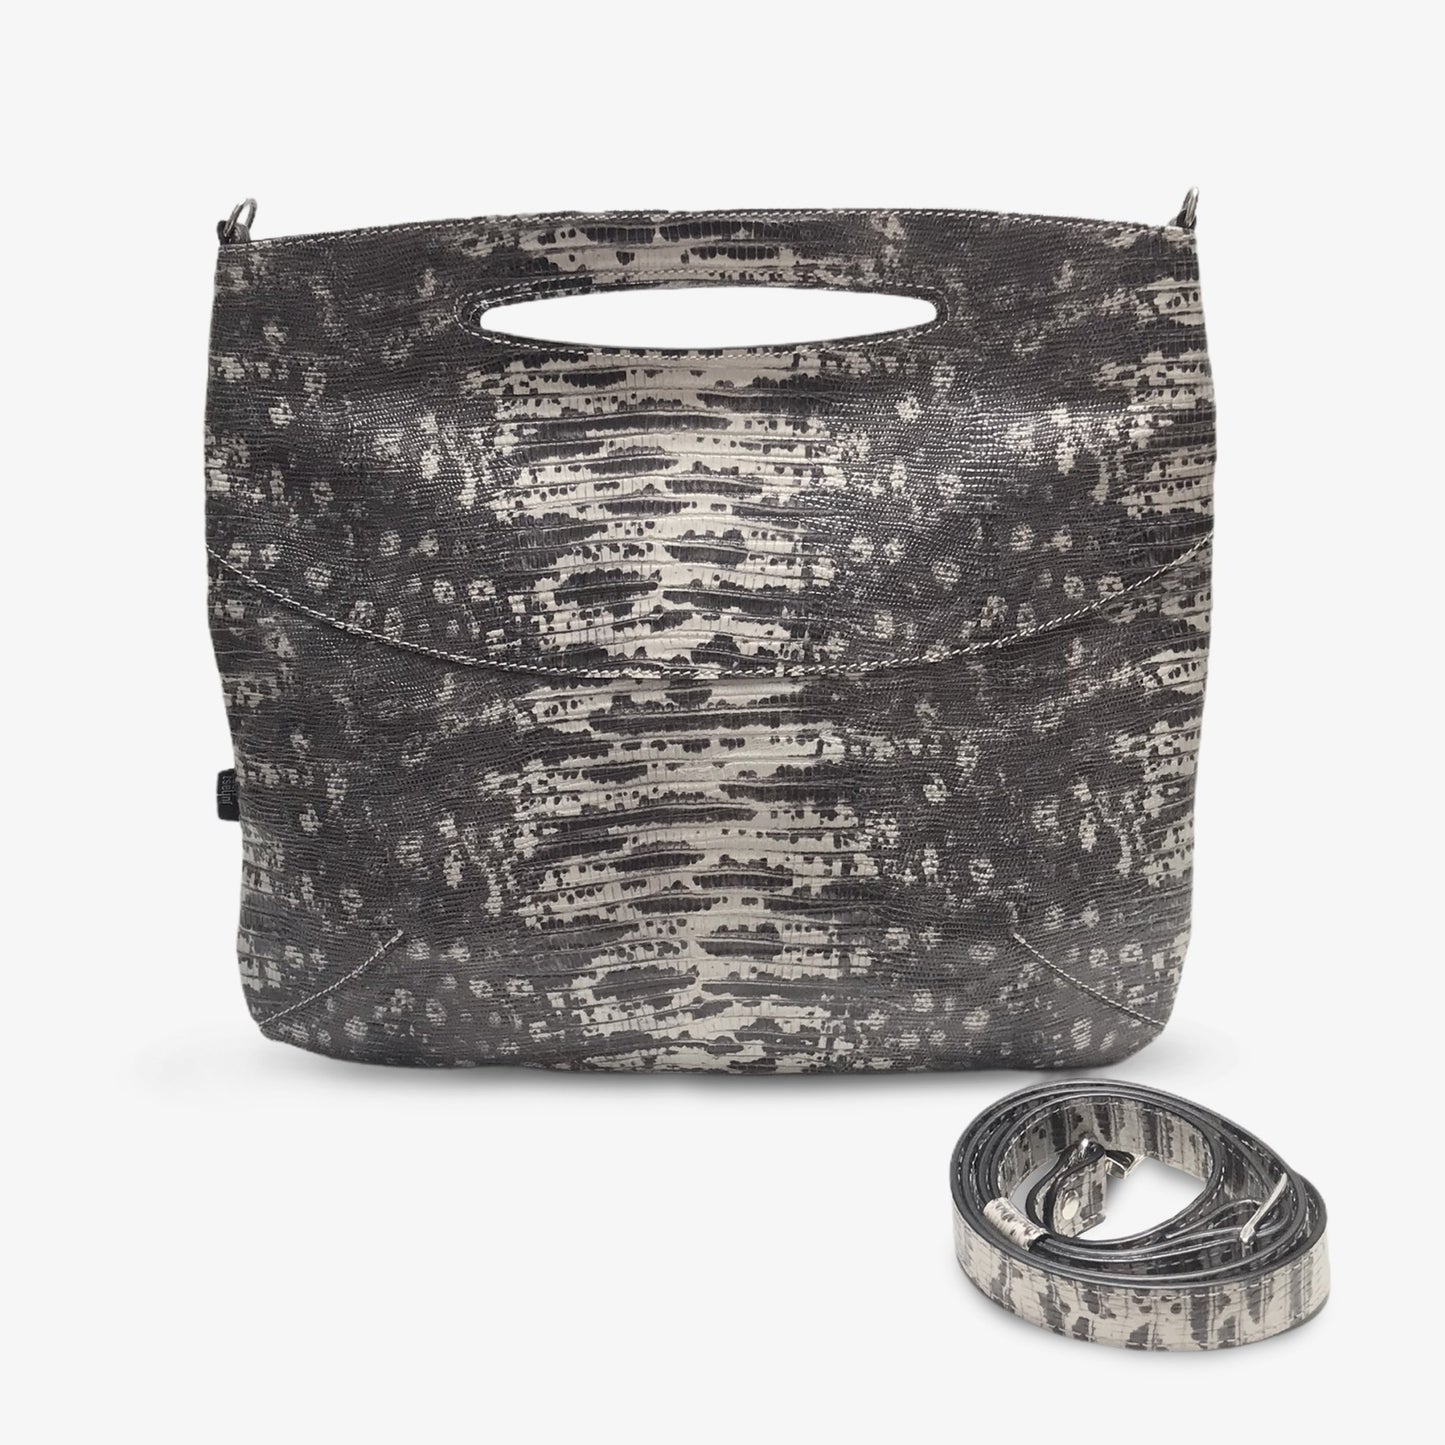 Doric shoulder bag - gray snake print